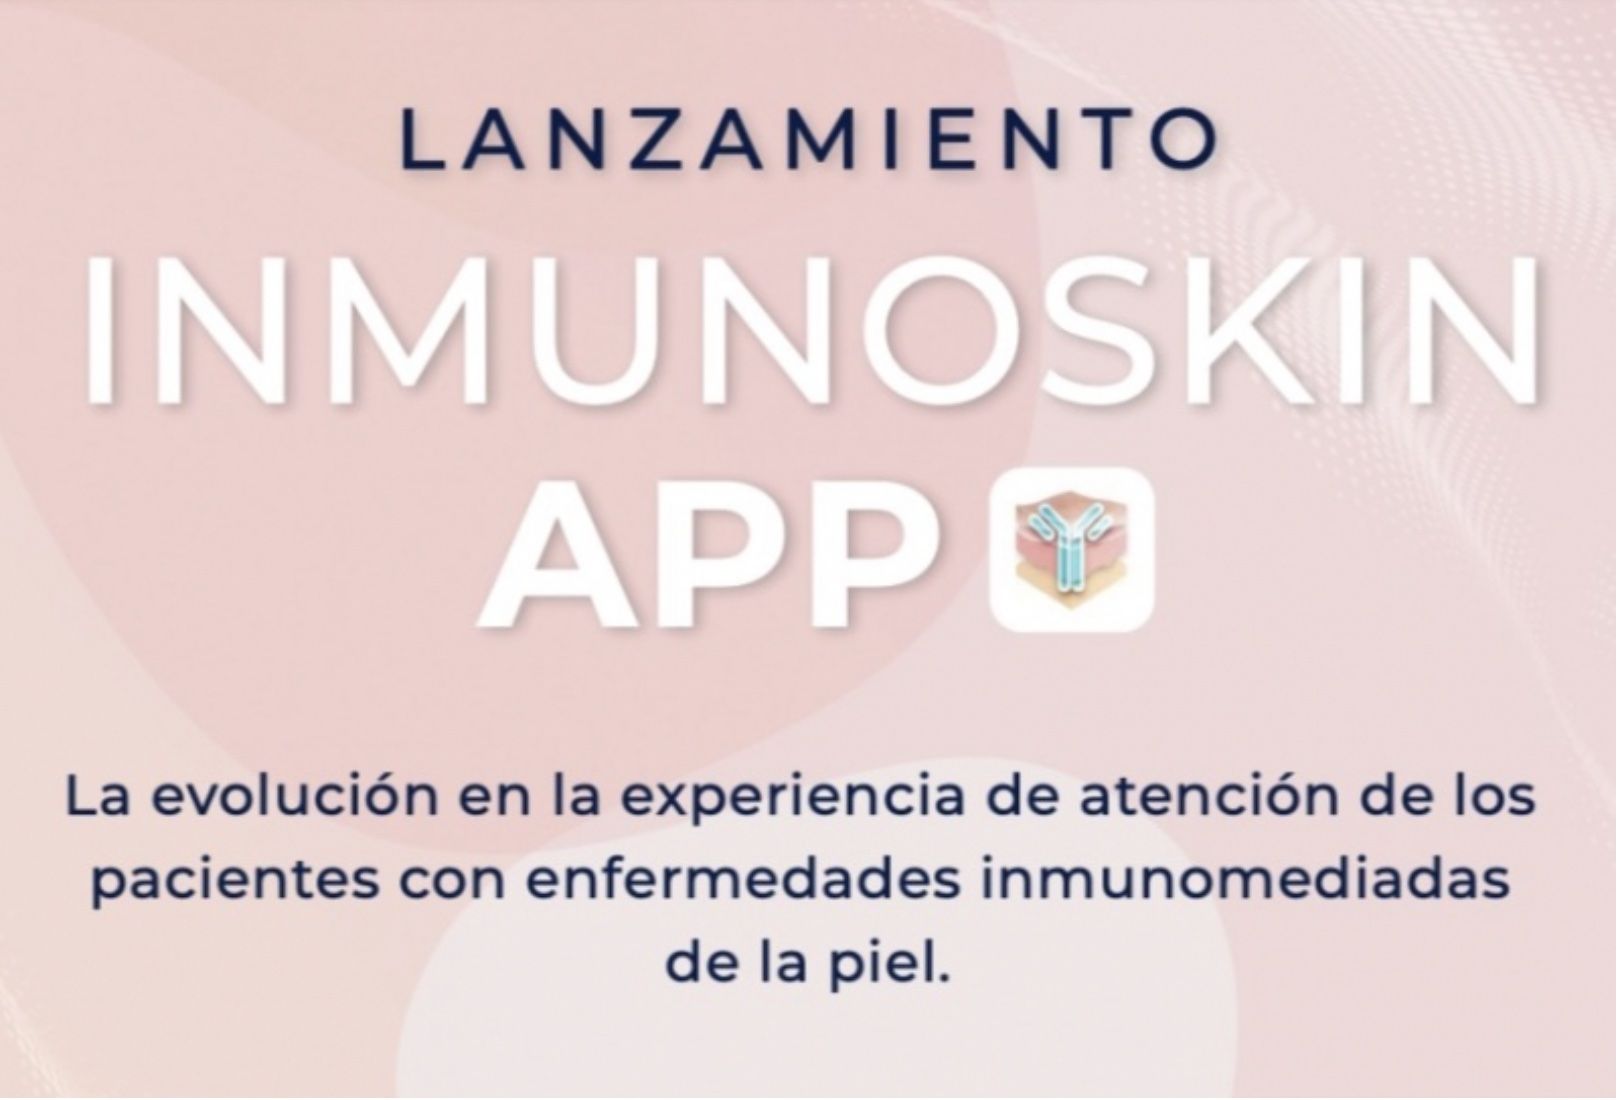 Lanzamiento APP InmunoSkin. App para el tratamiento de las enfermedades inflamatorias de la piel